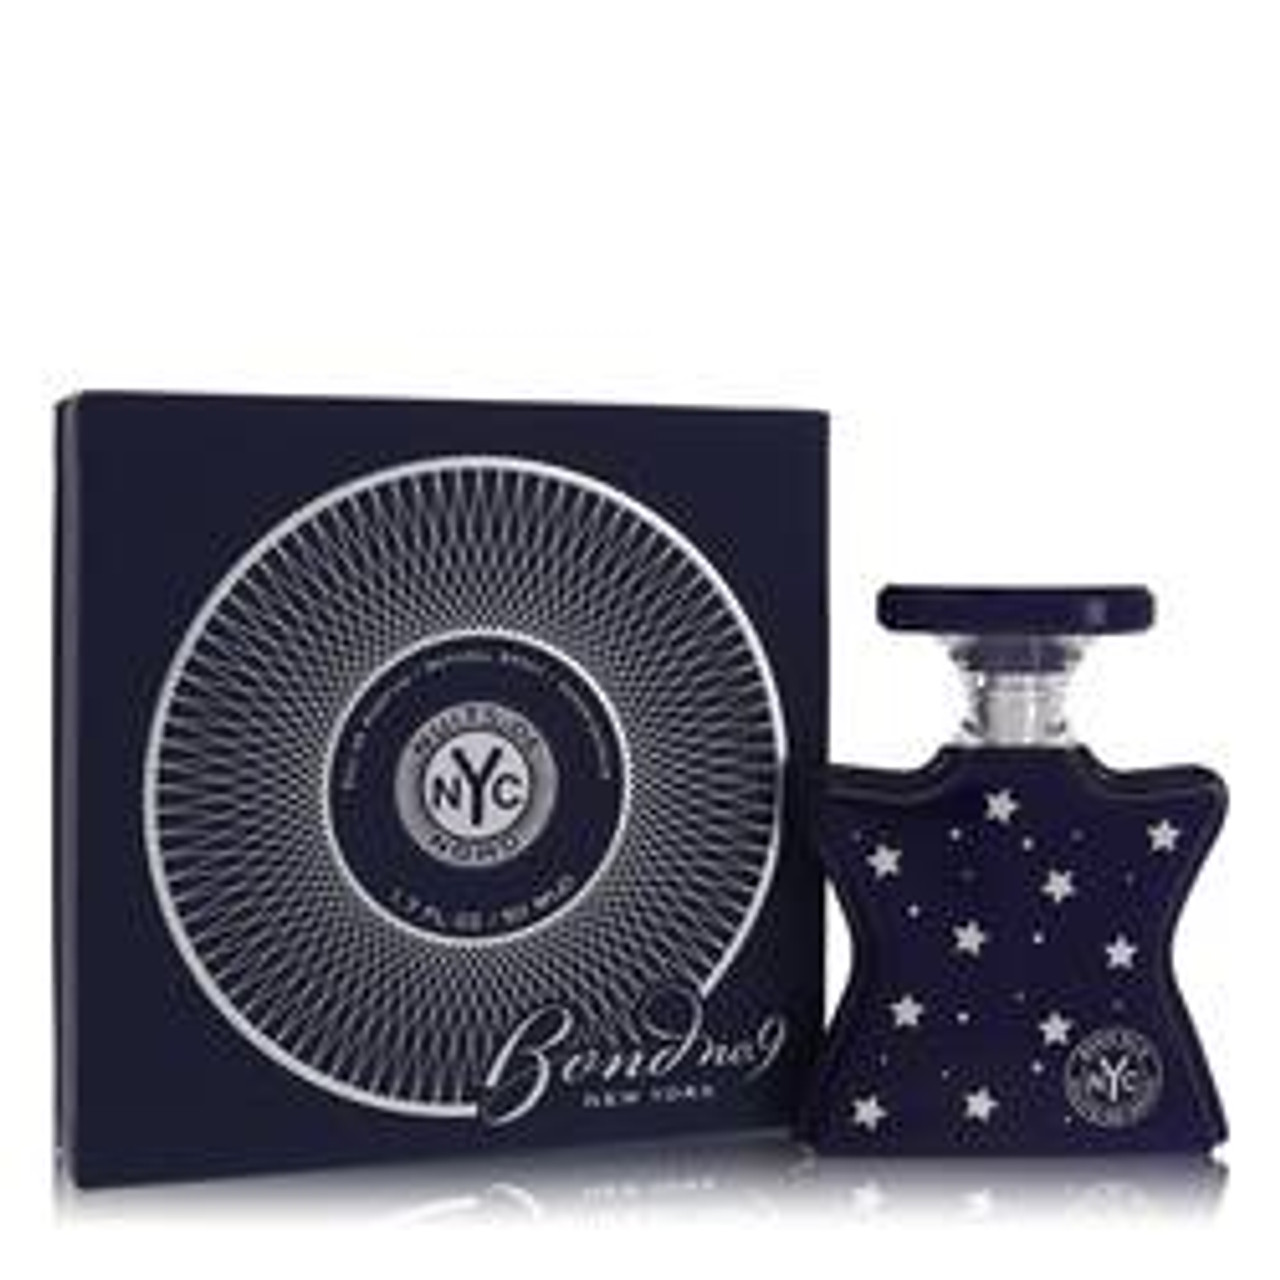 Nuits De Noho Perfume By Bond No. 9 Eau De Parfum Spray 1.7 oz for Women - *Pre-Order